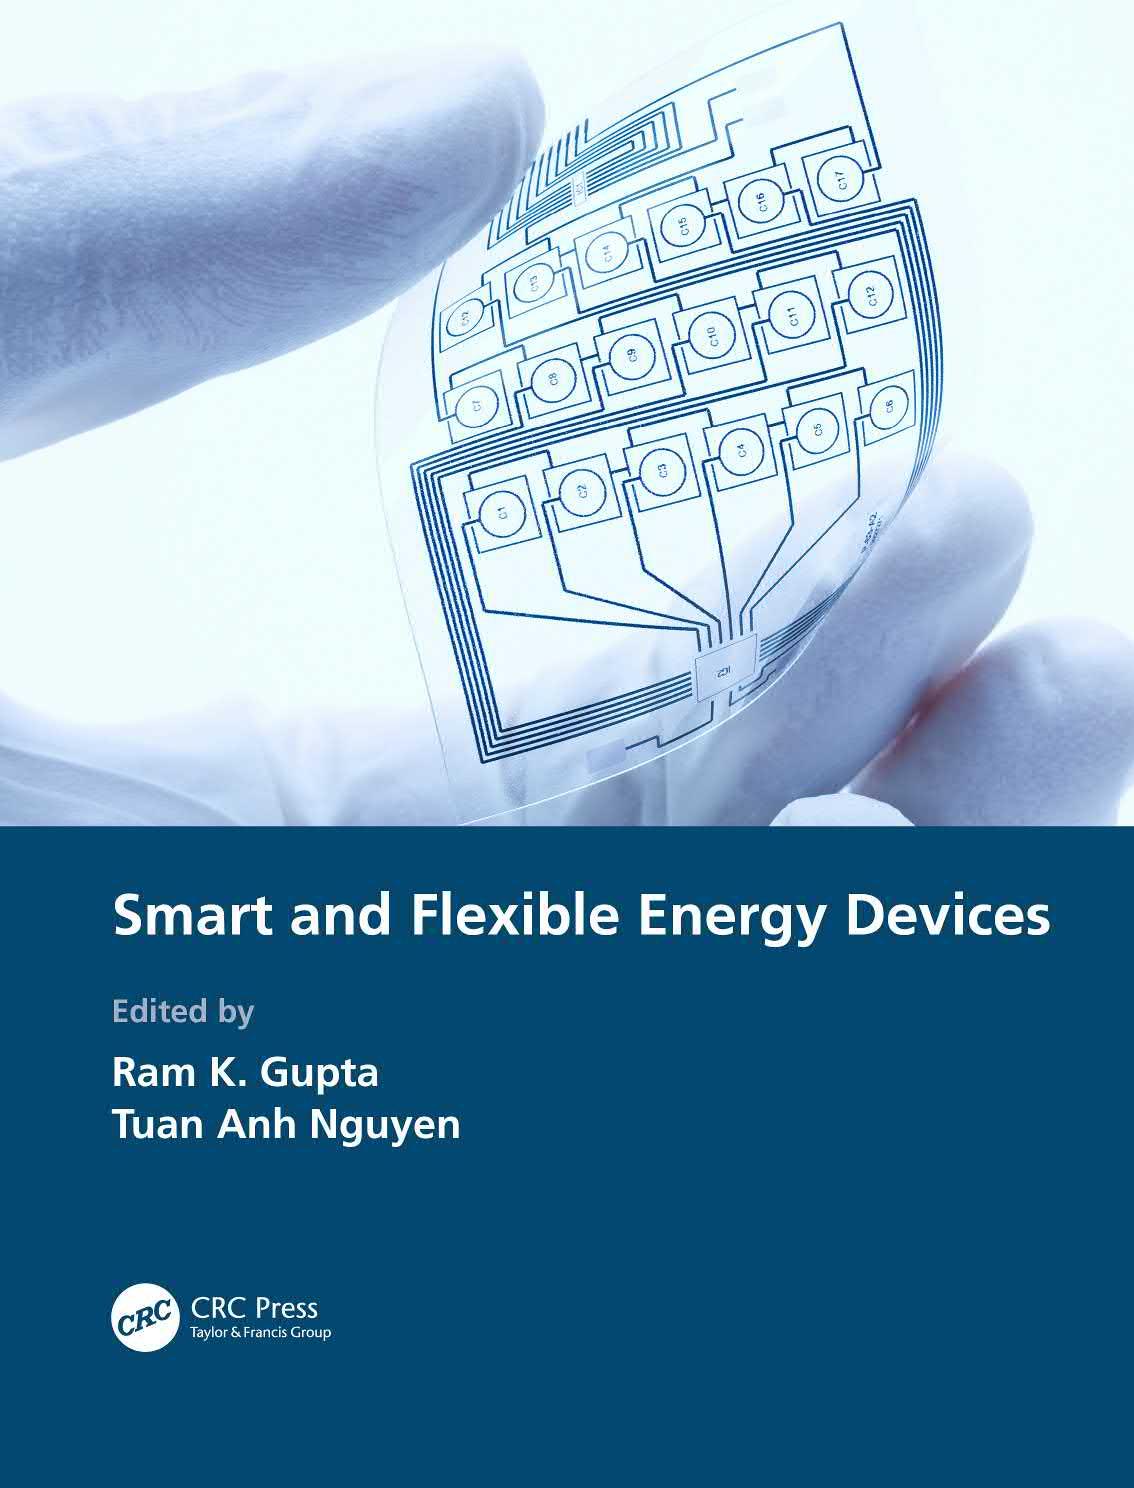 تالیف فصل دوازدهم کتاب Smart and Flexible Energy Devices با عنوان : Inorganic Materials for Flexible Solar Cells